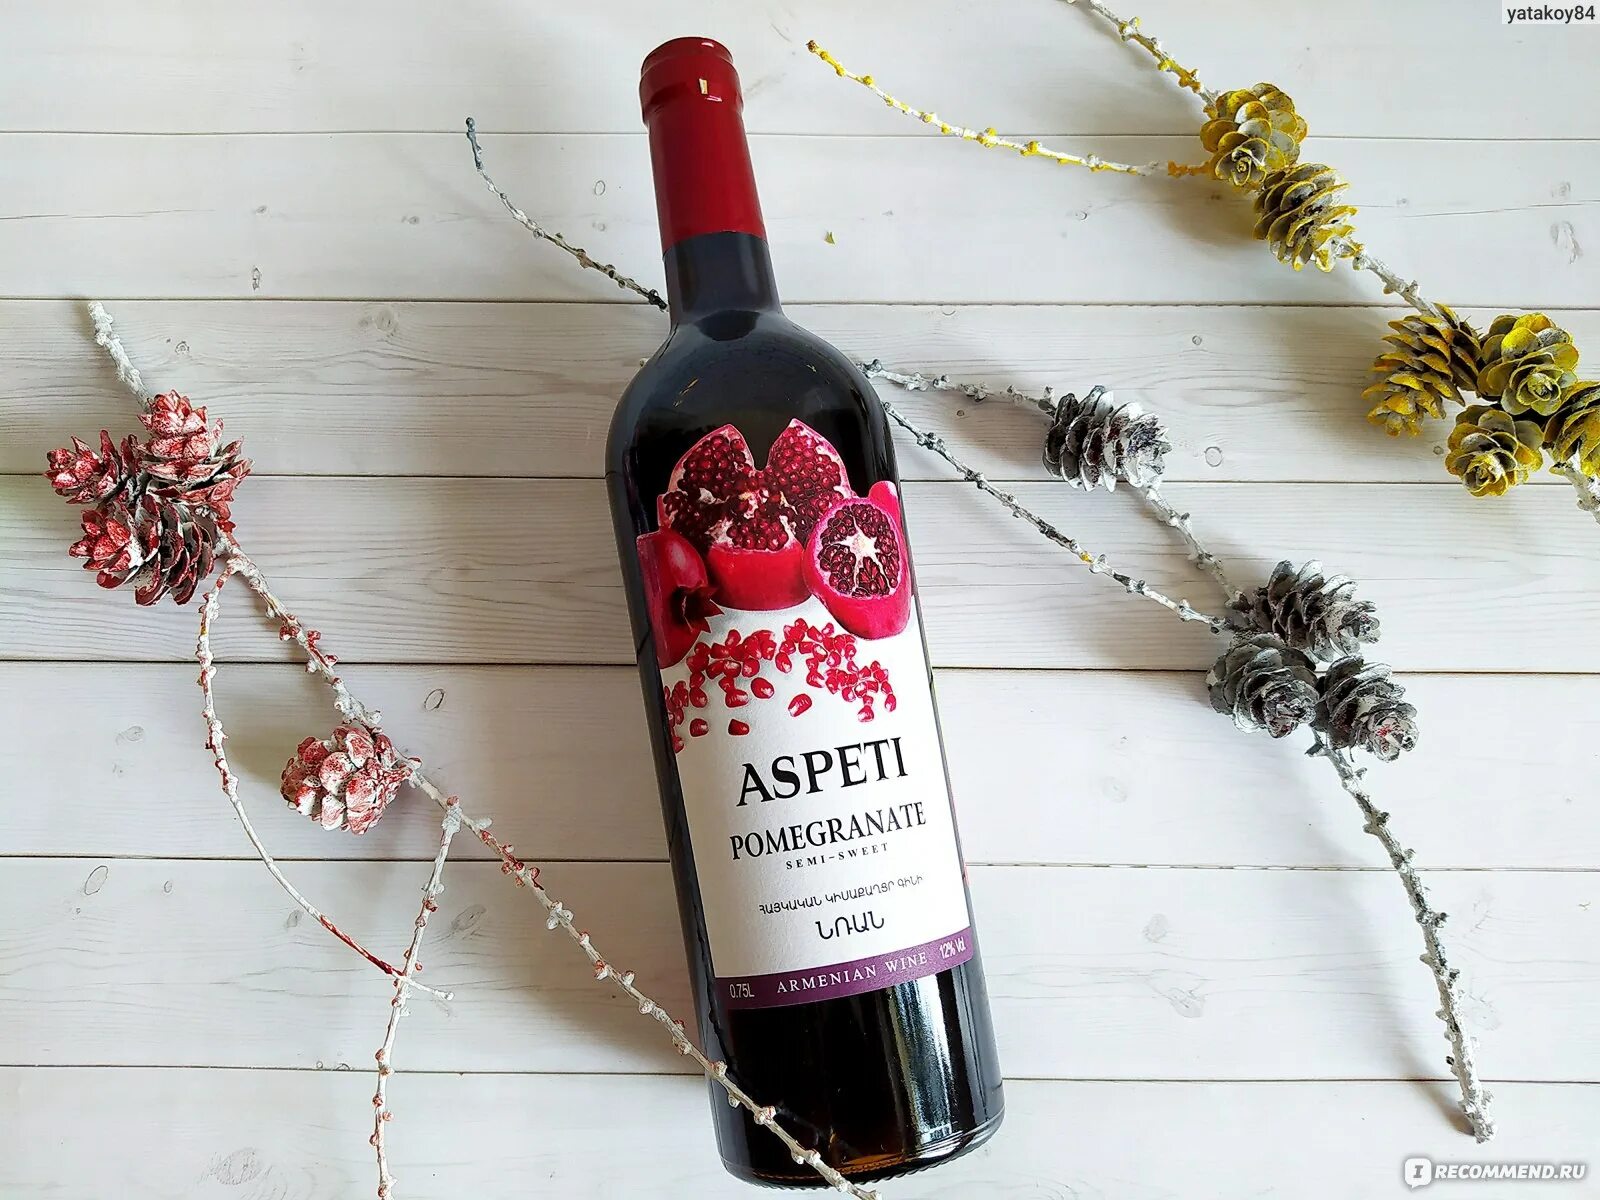 Вино Aspeti Pomegranate. Aspeti вино Гранатовое. Вино Гранатовое Aspeti Pomegranate. Вино Гранатовое Армения Аспети. Вино гранате купить